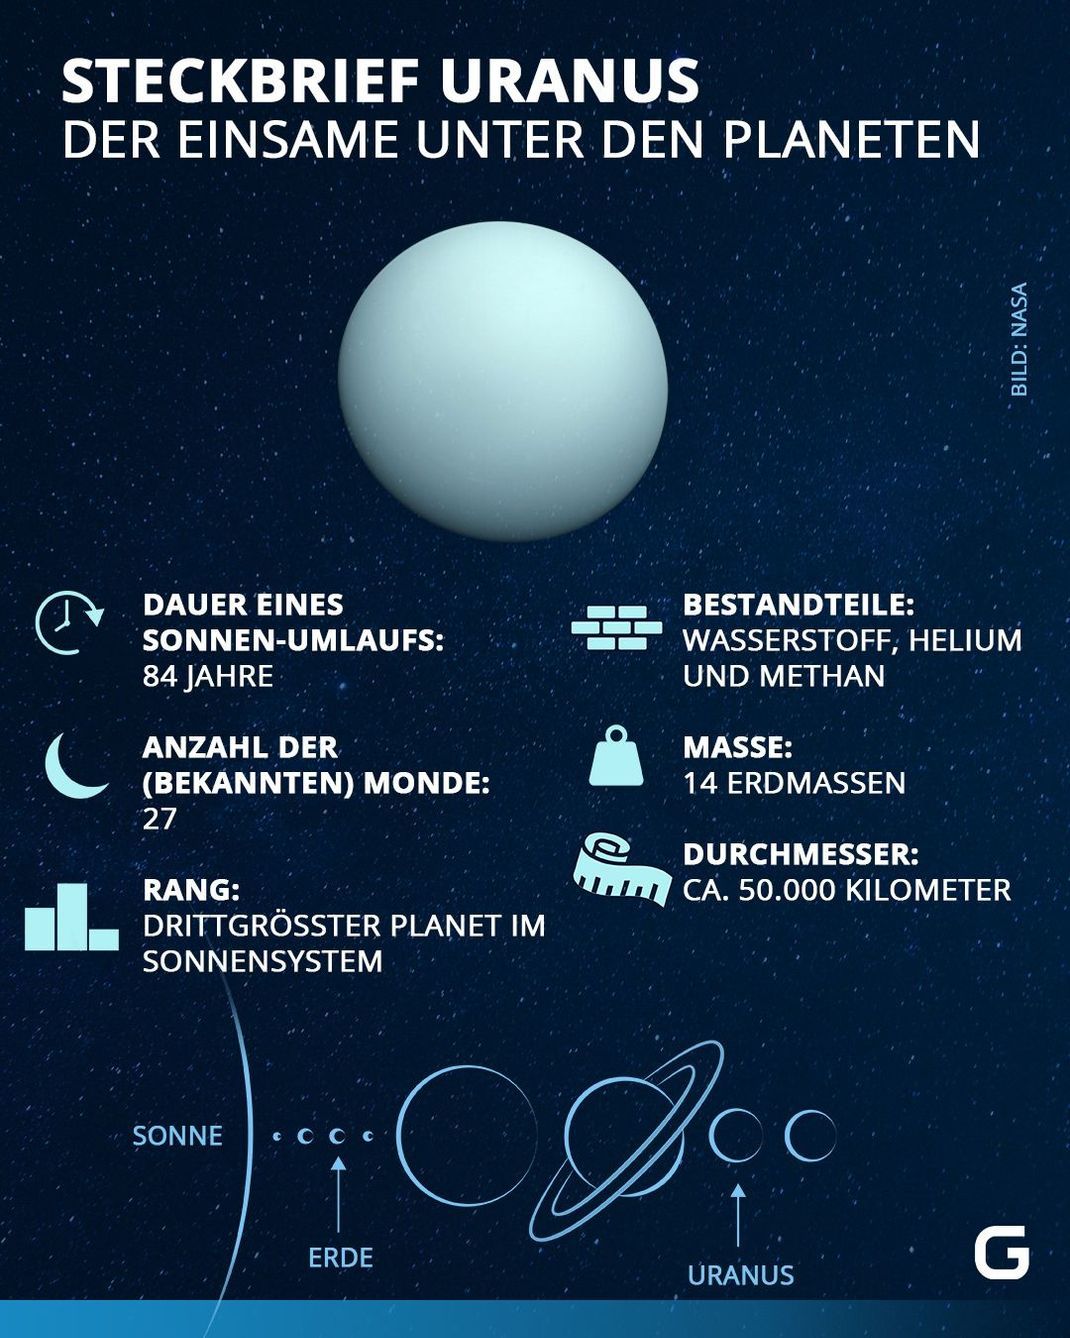 Eckdaten zum Planeten Uranus im Steckbrief